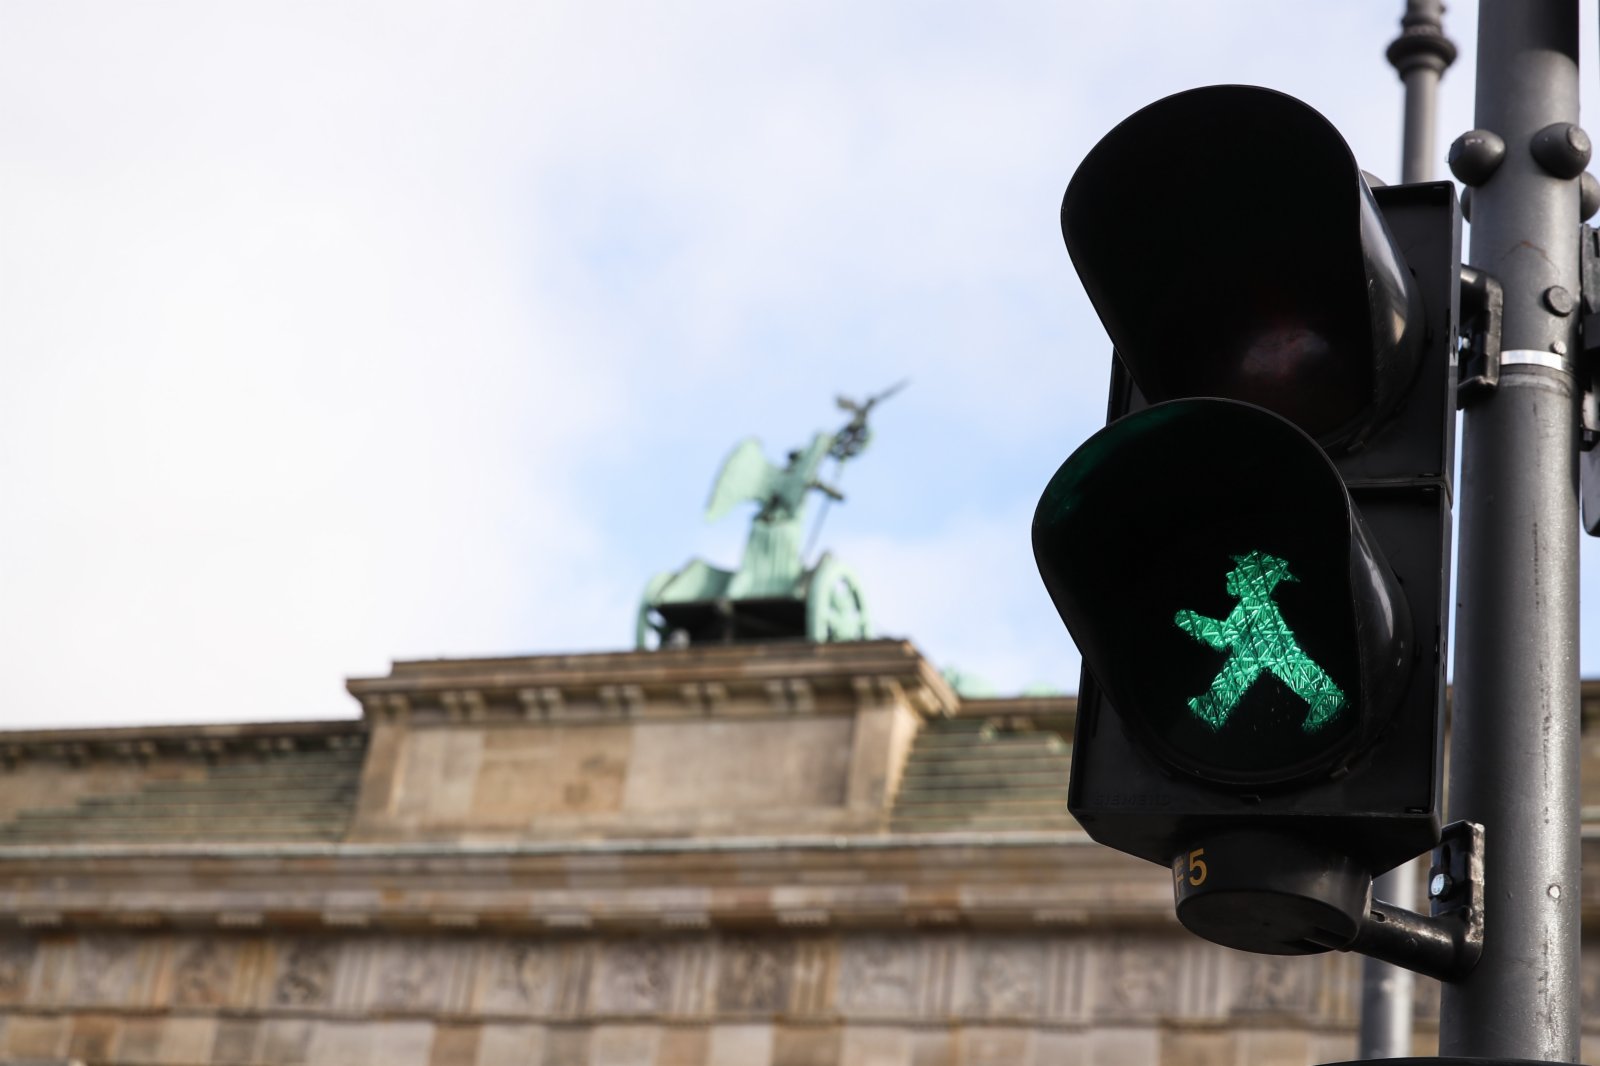 這是11月19日在德國首都柏林拍攝的一座「綠燈小人」雕塑。柏林的人形行人信號燈於1961年由德國交通心理學家卡爾·佩格勞創作，1969年開始投入使用並逐漸普及。其設計的初衷是讓對顏色不敏感的群體更好地識別行人交通信號，同時生動的人物形象更容易被人們接受。此外，這種信號燈的發光面積也比一般的行人信號燈更大，因而更加醒目。時至今日，這種「紅綠燈小人」已經成為了柏林的一種文化符號。（新華社）